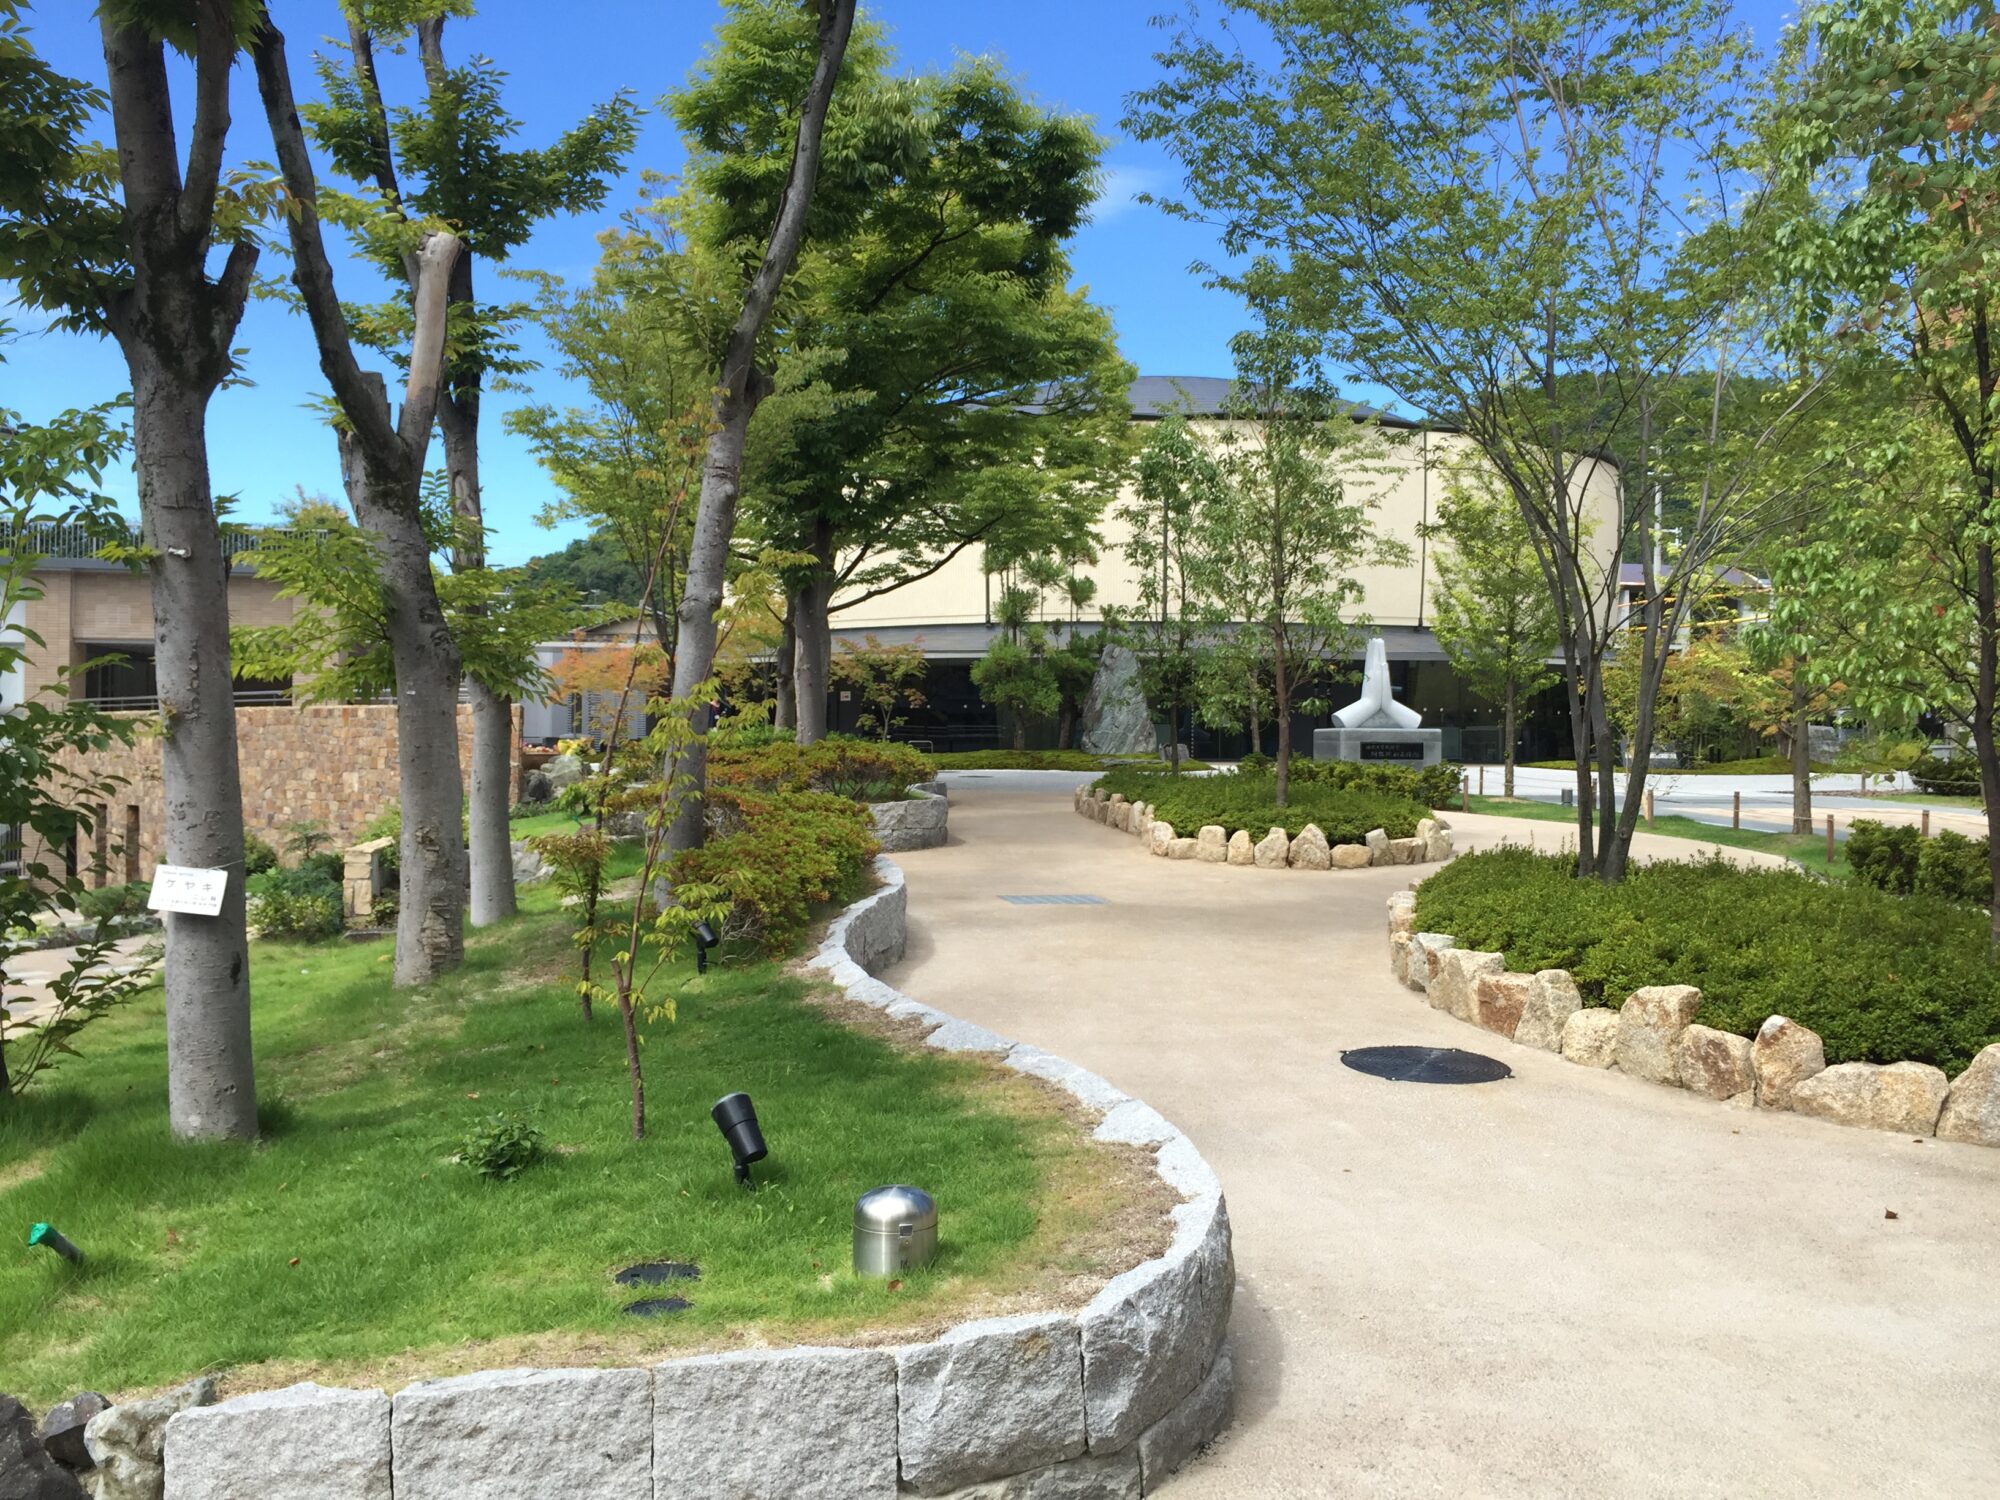 佛教大学北 南校地意匠監修 紫野キャンパス ランドスケープデザイン Landscape Design